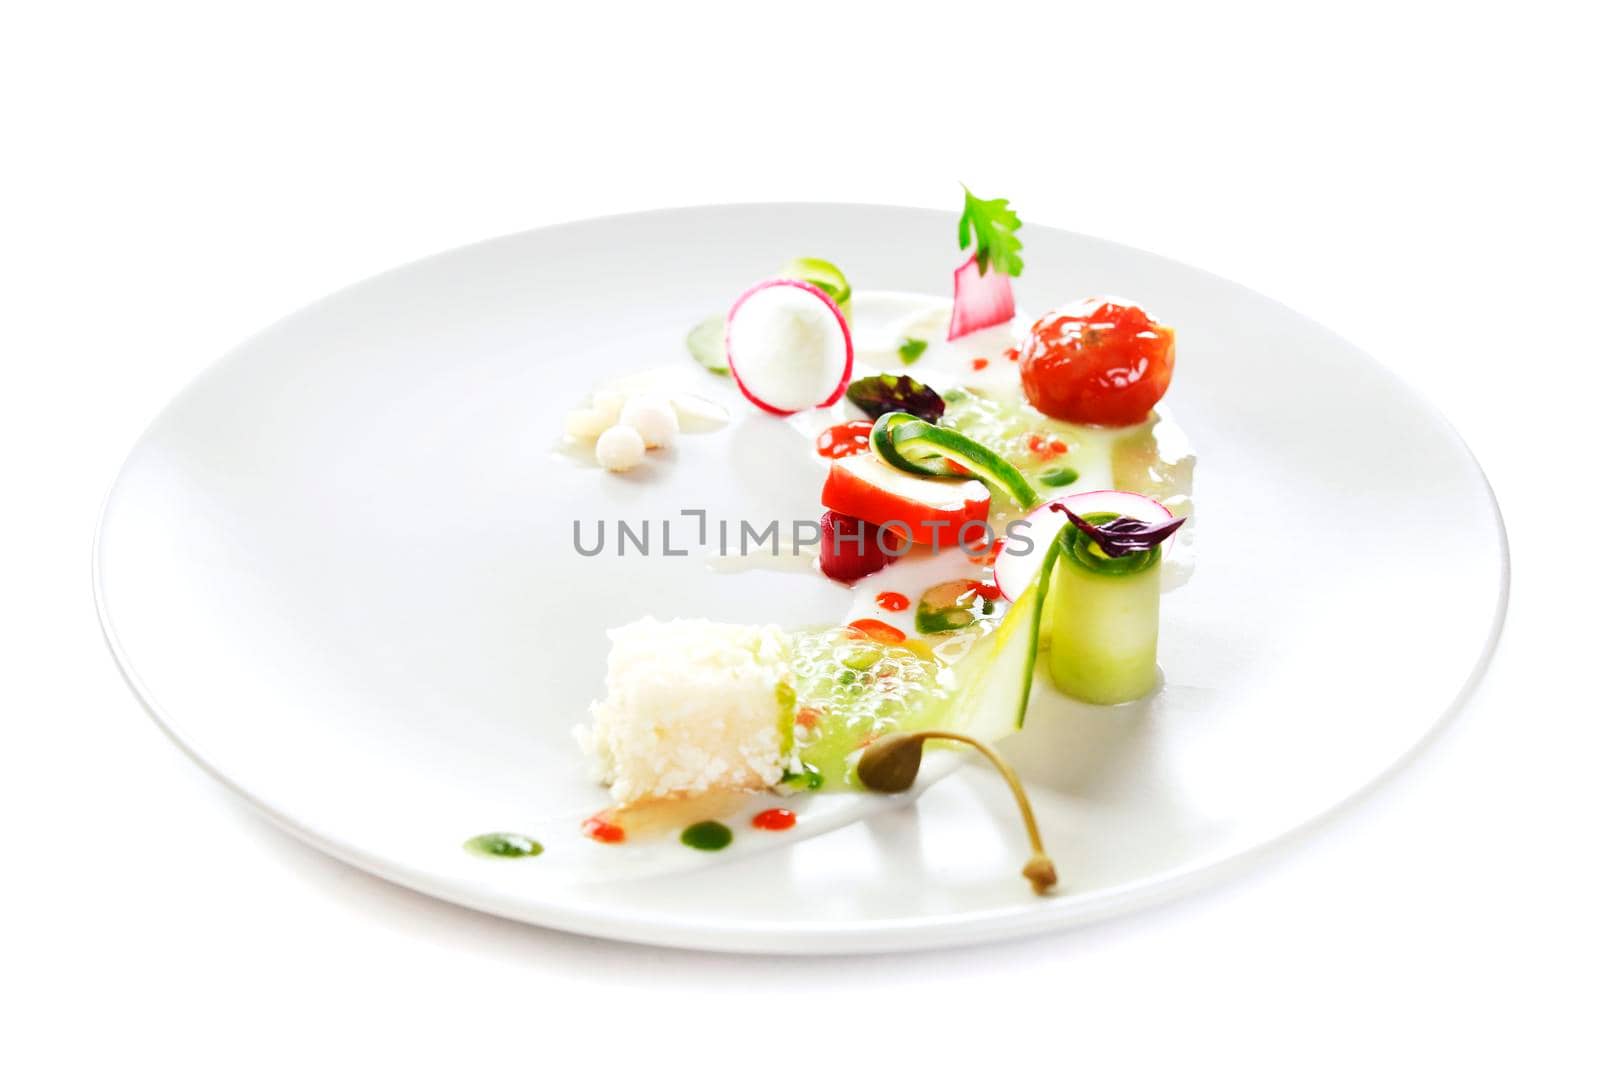 Molecular cuisine vegetable salad by Jyliana